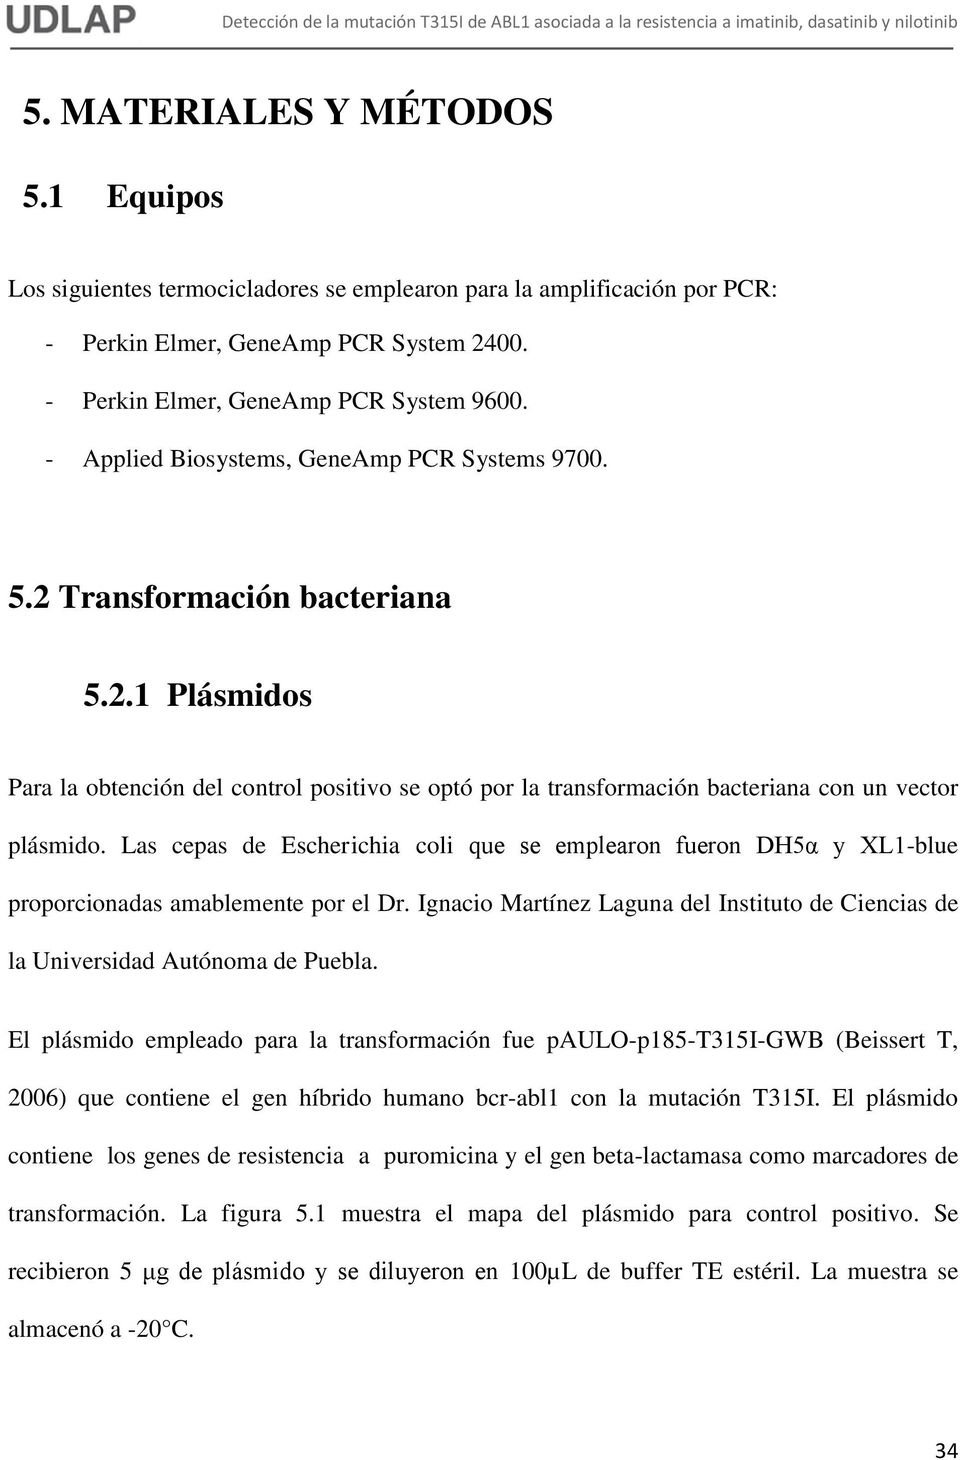 Las cepas de Escherichia coli que se emplearon fueron DH5α y XL1-blue proporcionadas amablemente por el Dr. Ignacio Martínez Laguna del Instituto de Ciencias de la Universidad Autónoma de Puebla.